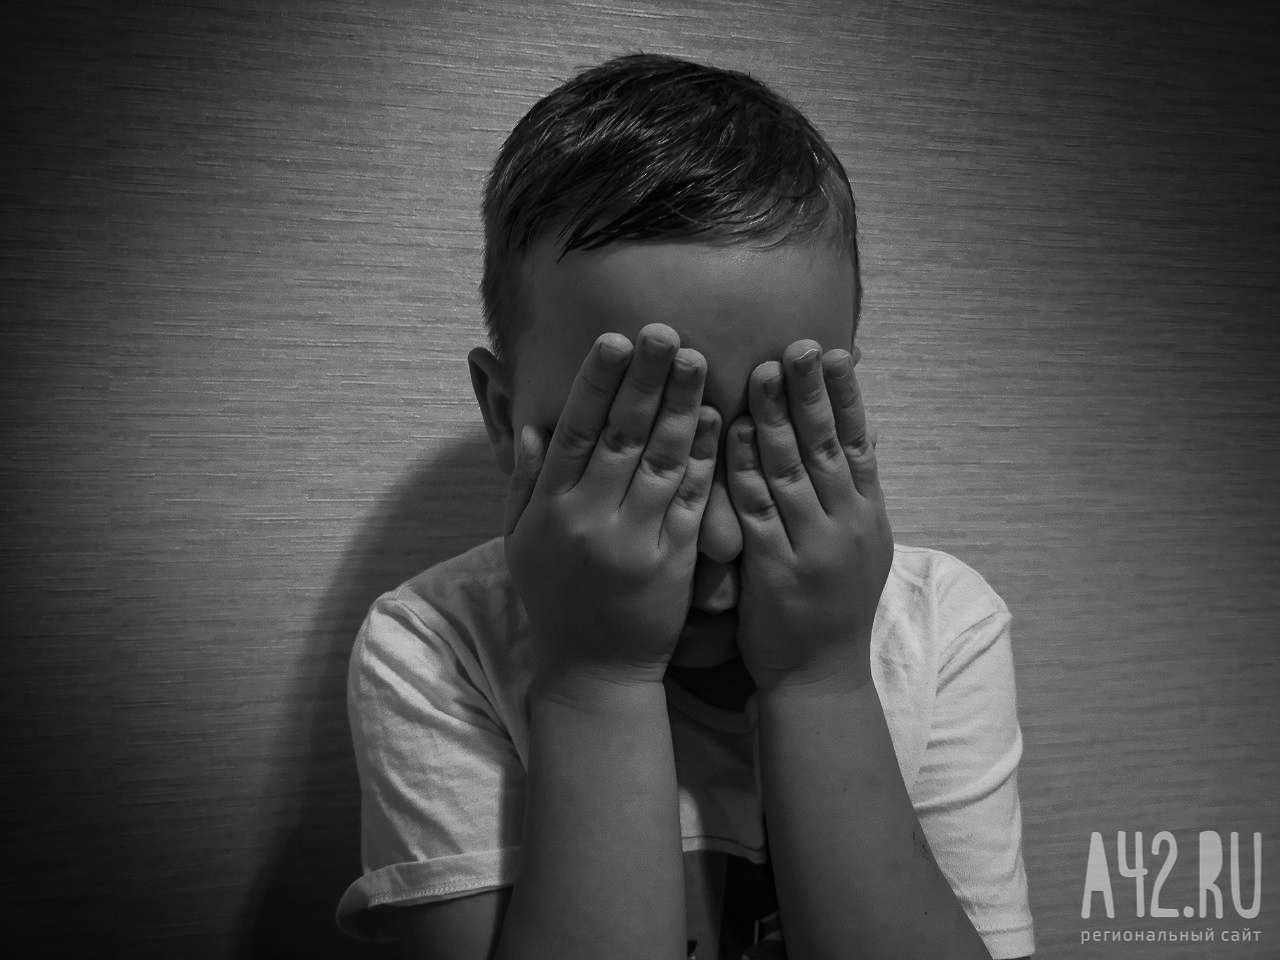 В Кузбассе 9-летний мальчик травмировался на сломанном аттракционе: дело направлено в суд